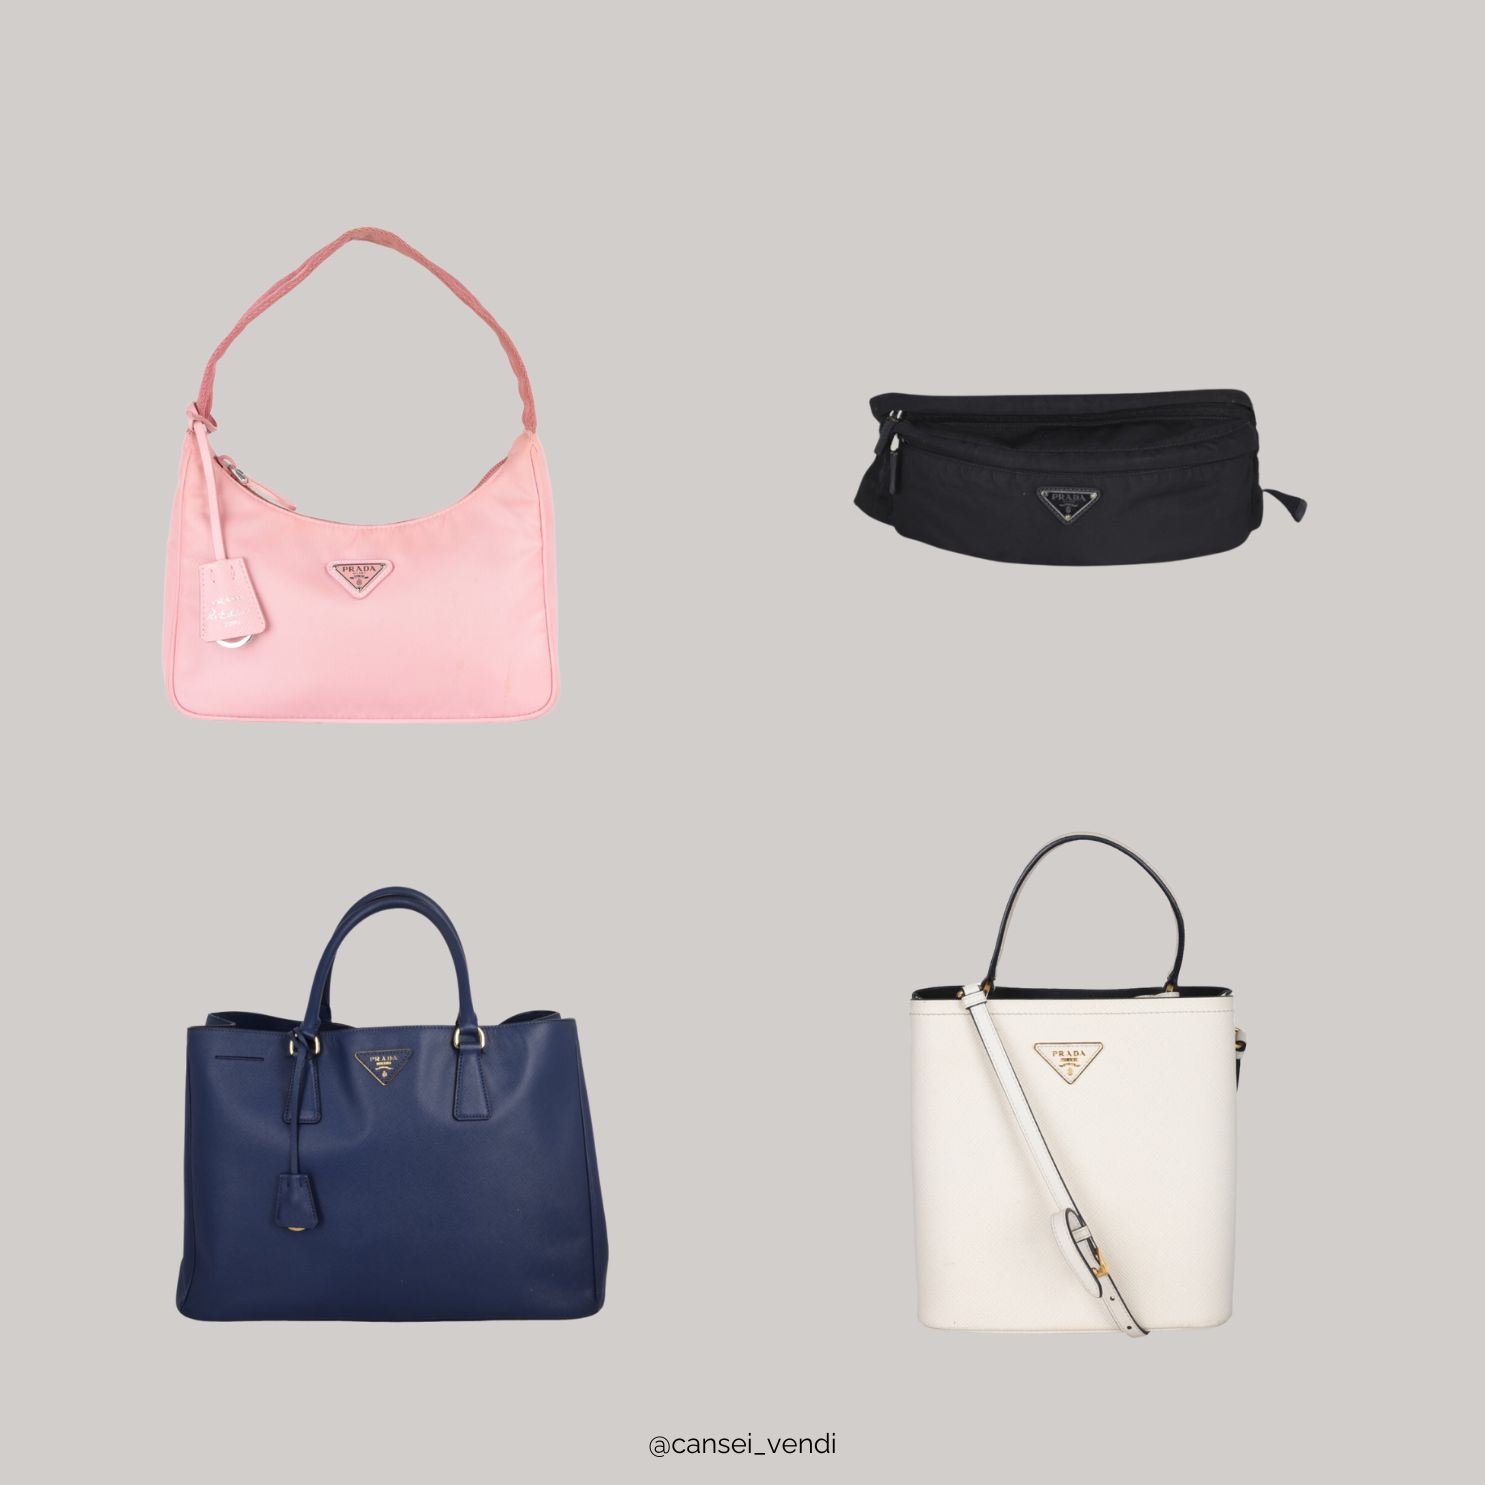 As 10 marcas de bolsas femininas mais procuradas - Cansei Vendi - Brechó de  Luxo Online e Moda Circular